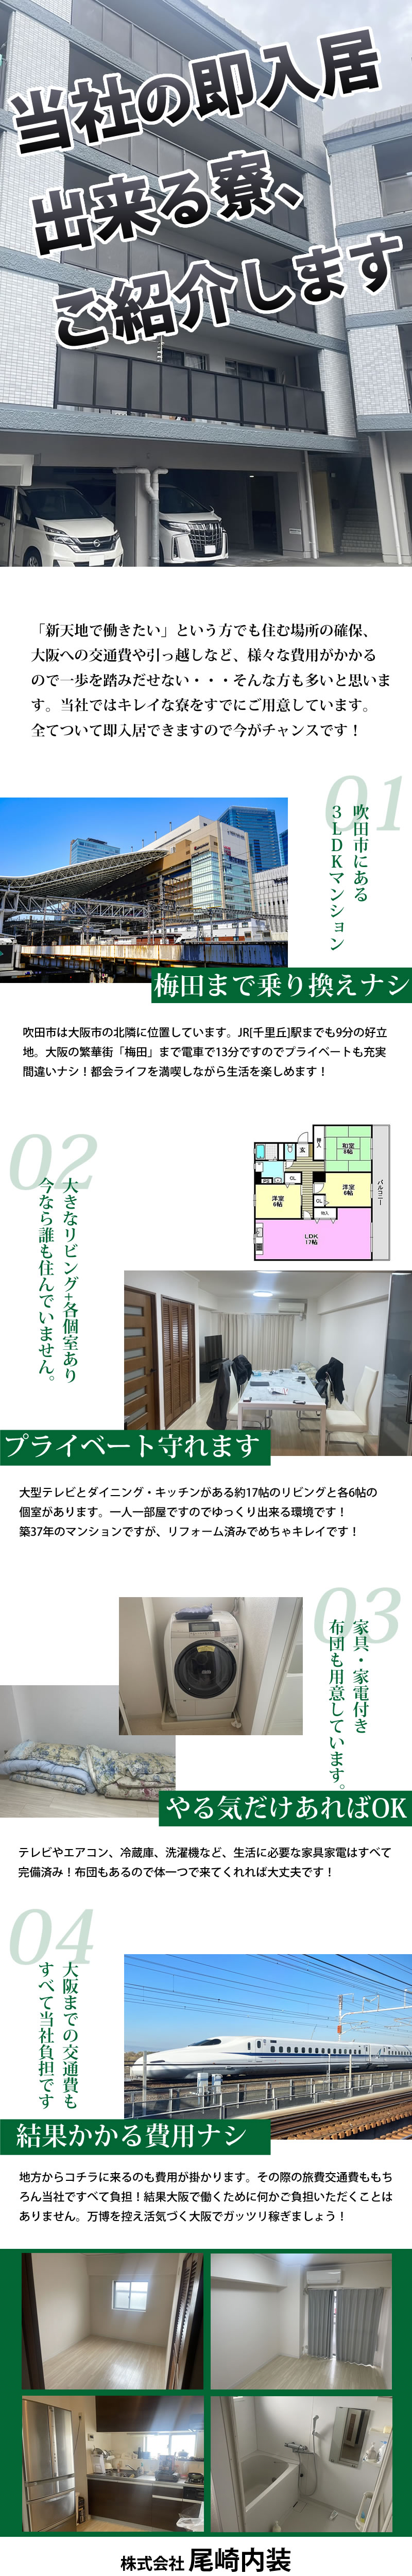 【軽天・ボード工　求人募集】-大阪府吹田市-　即入居できるキレイな寮完備!写真あります